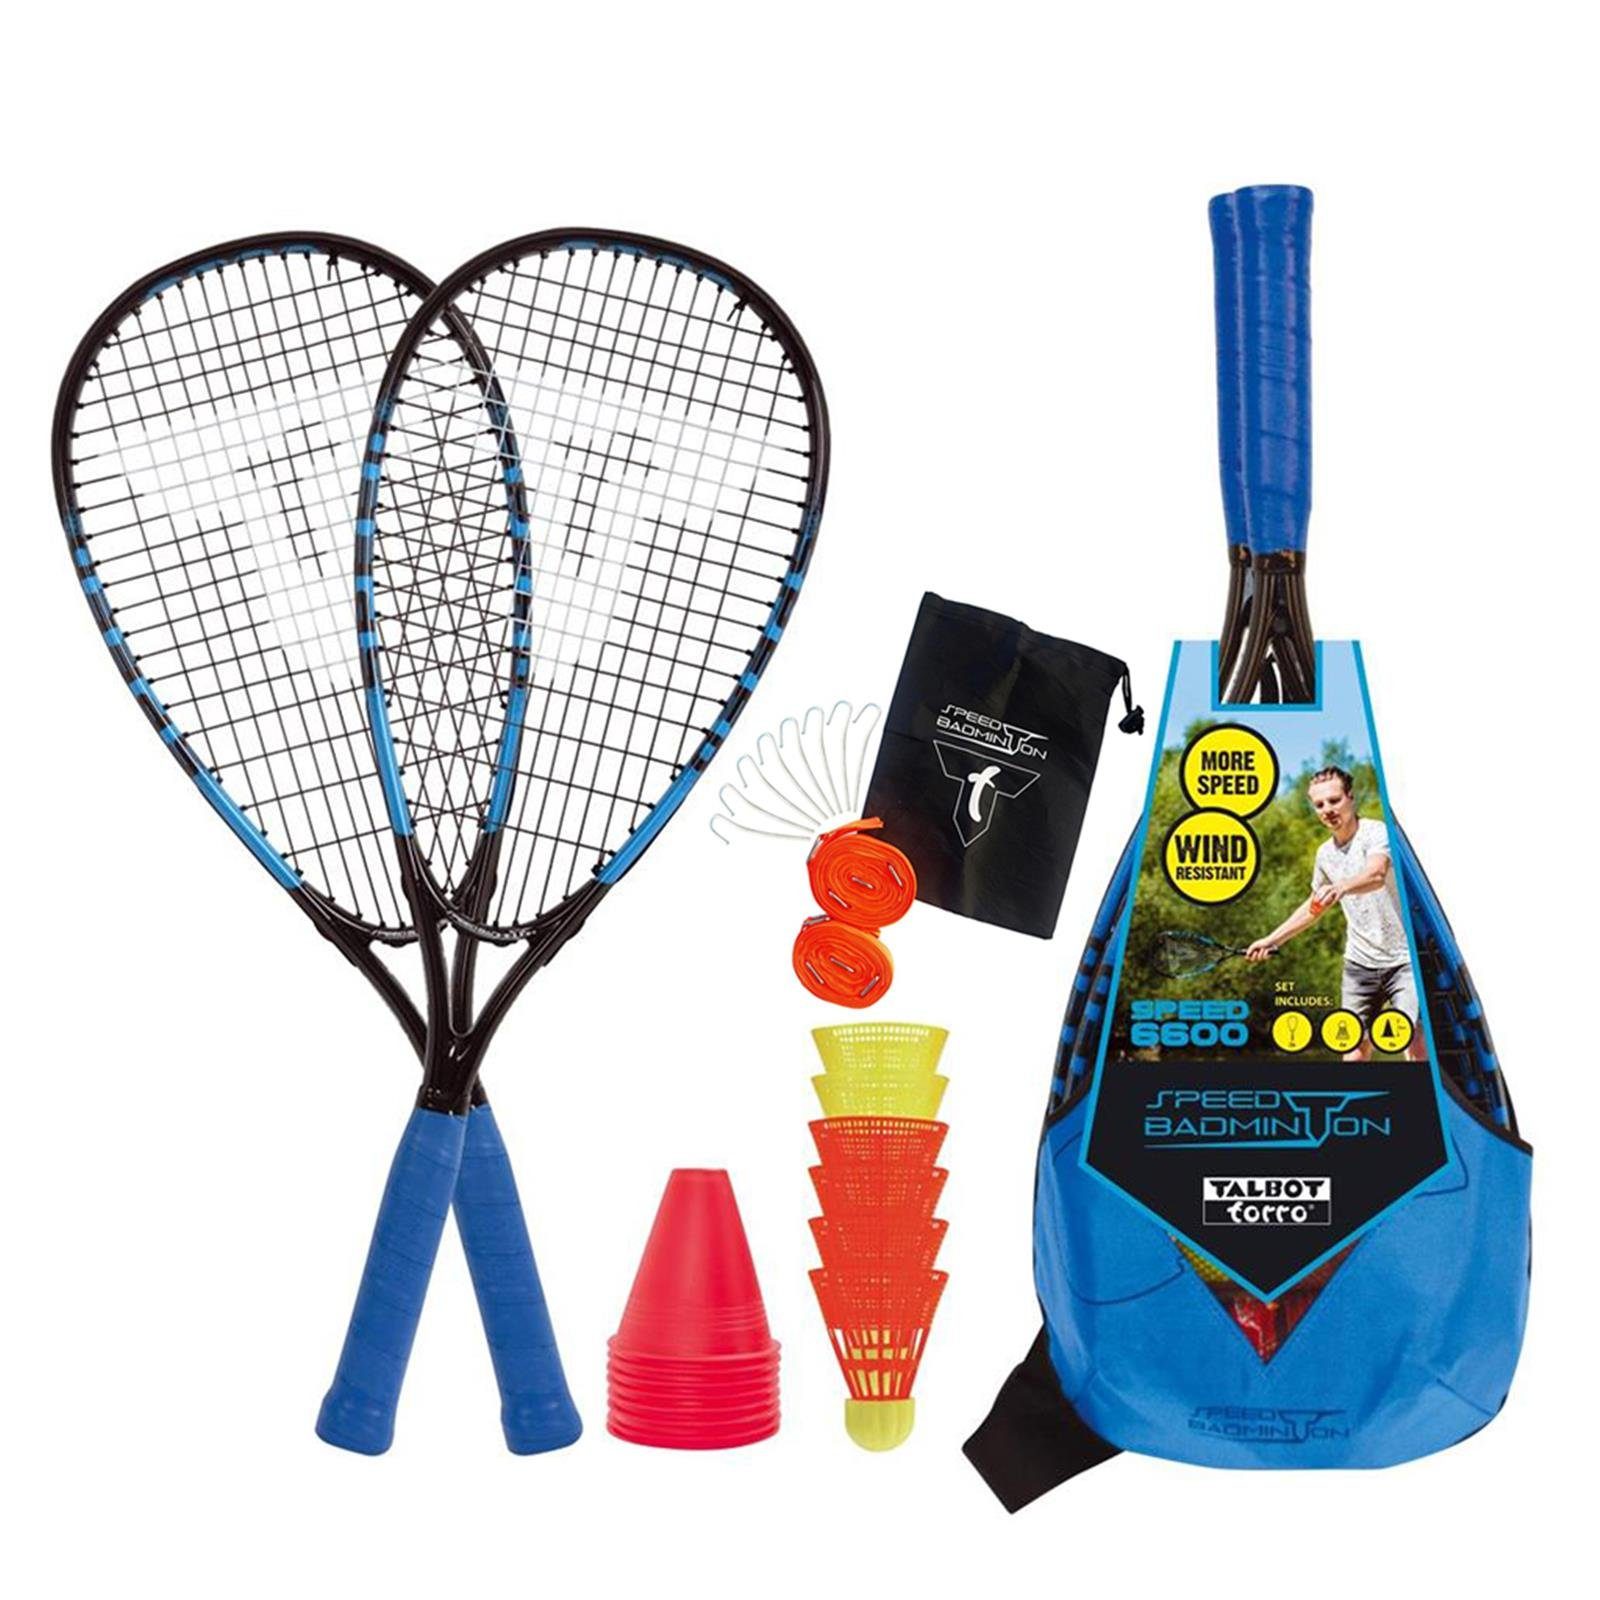 Talbot-Torro Speed-Badmintonschläger Line Speed-Badminton Set Speed + Court 6600